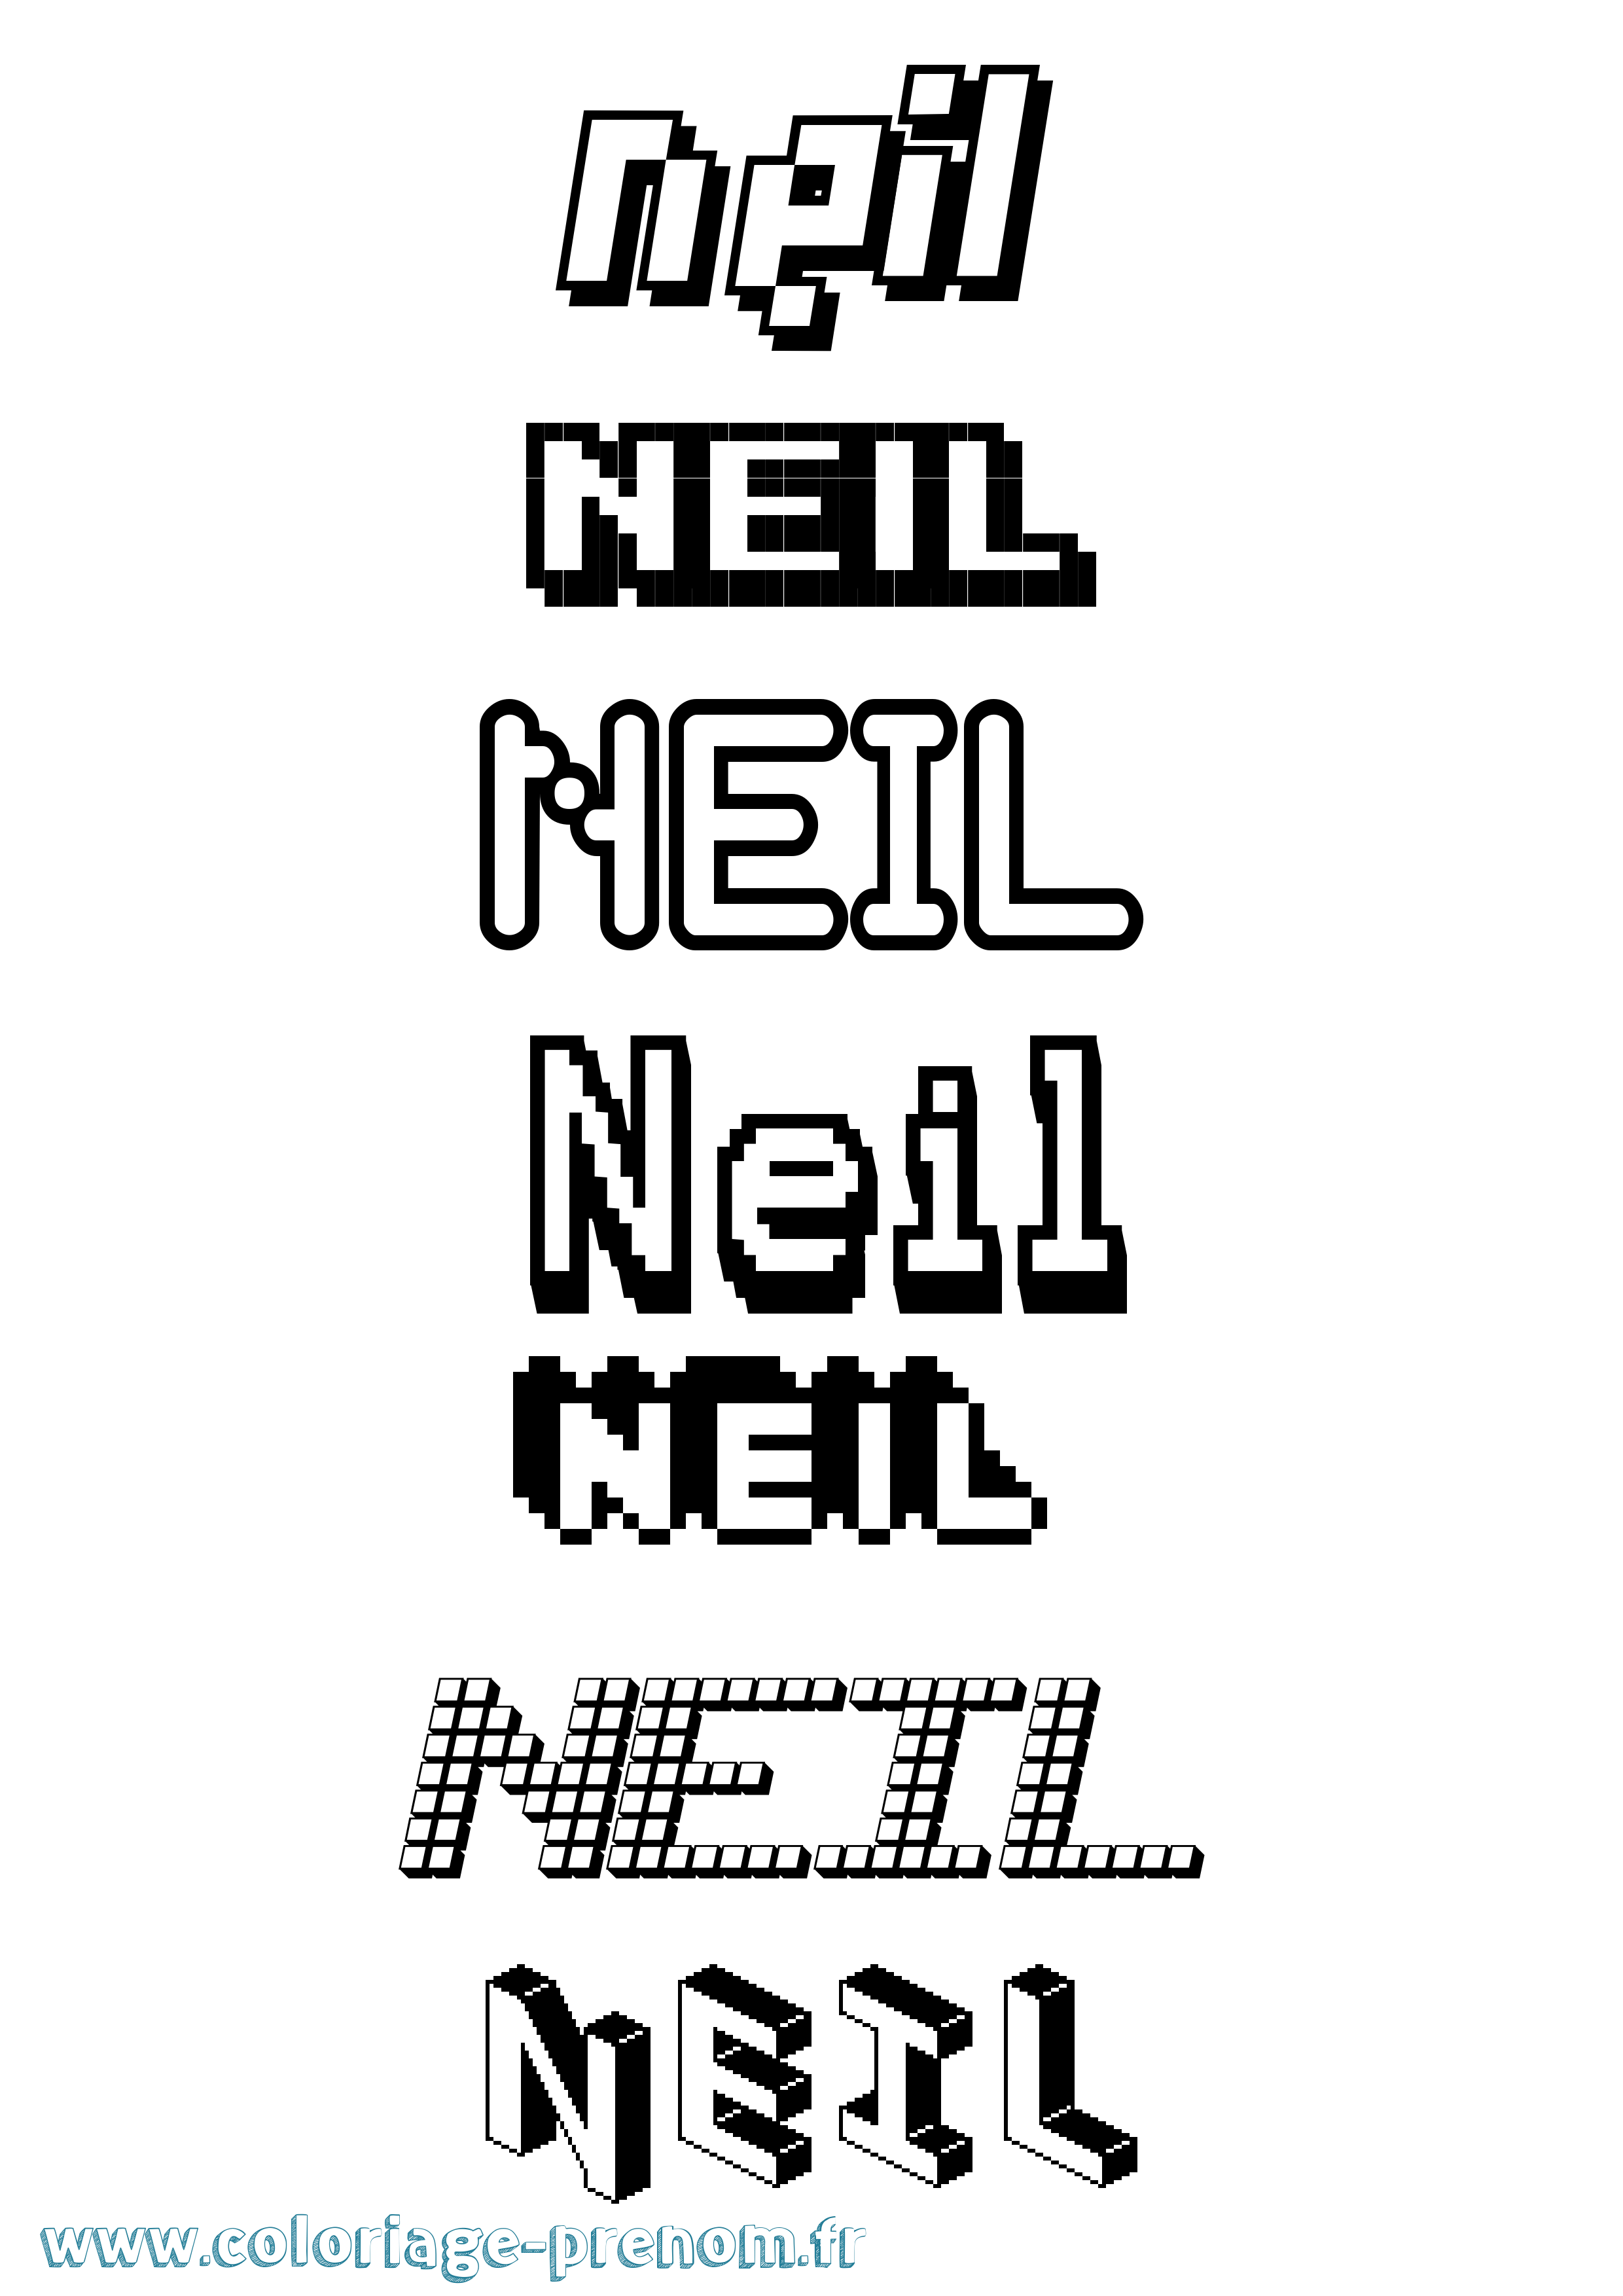 Coloriage prénom Neil Pixel